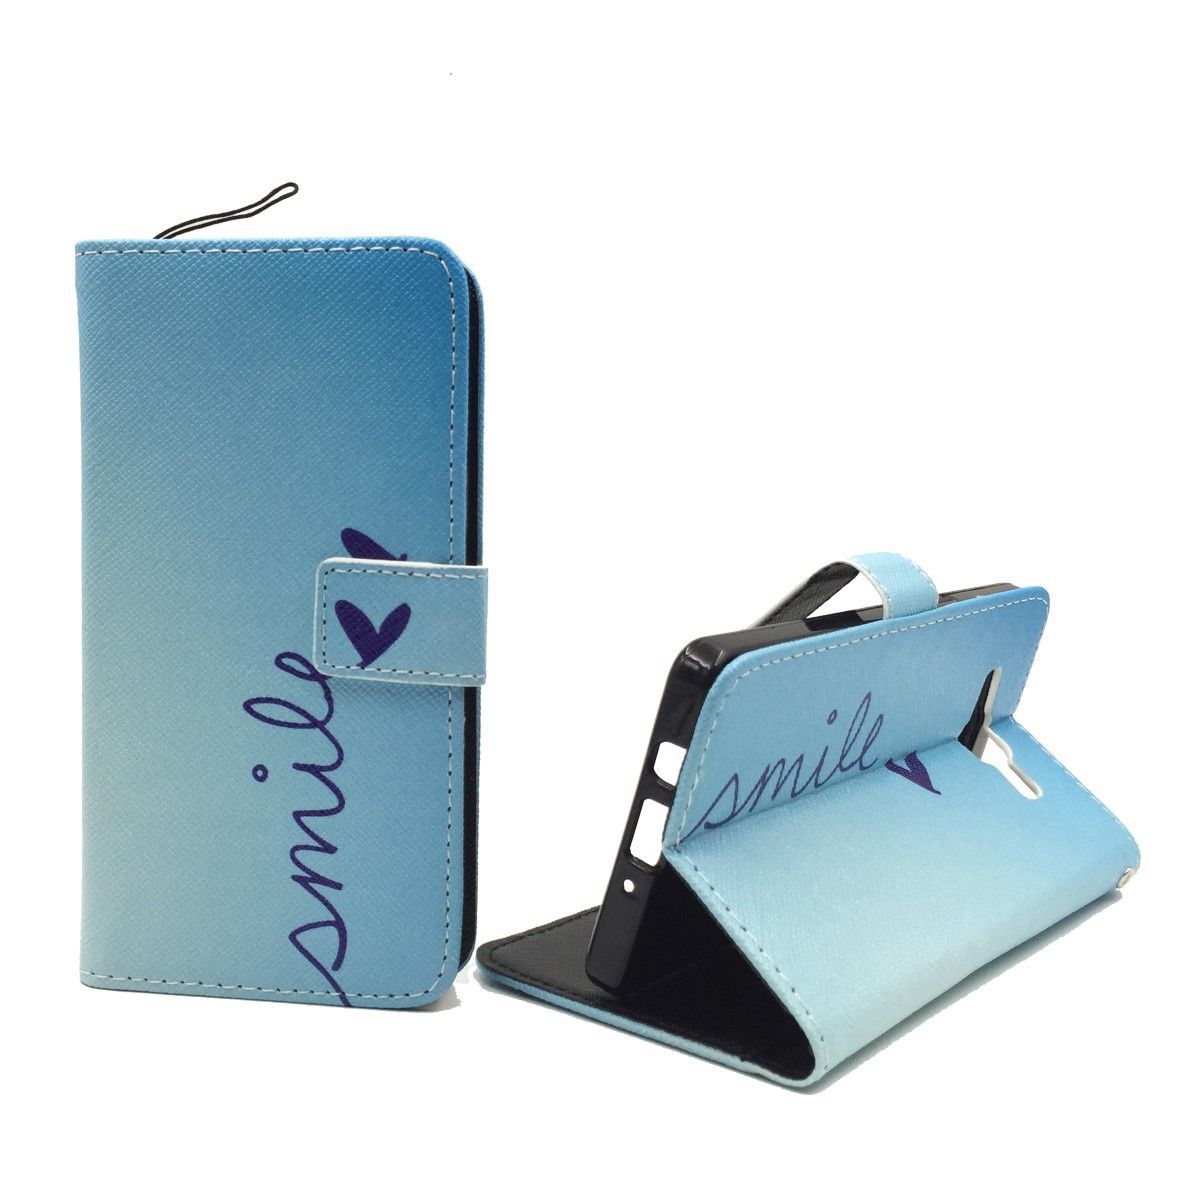 König Design Handyhülle kompatibel mit Samsung Galaxy A5 (2015) Schutztasche Wallet Cover 360 Case Blau